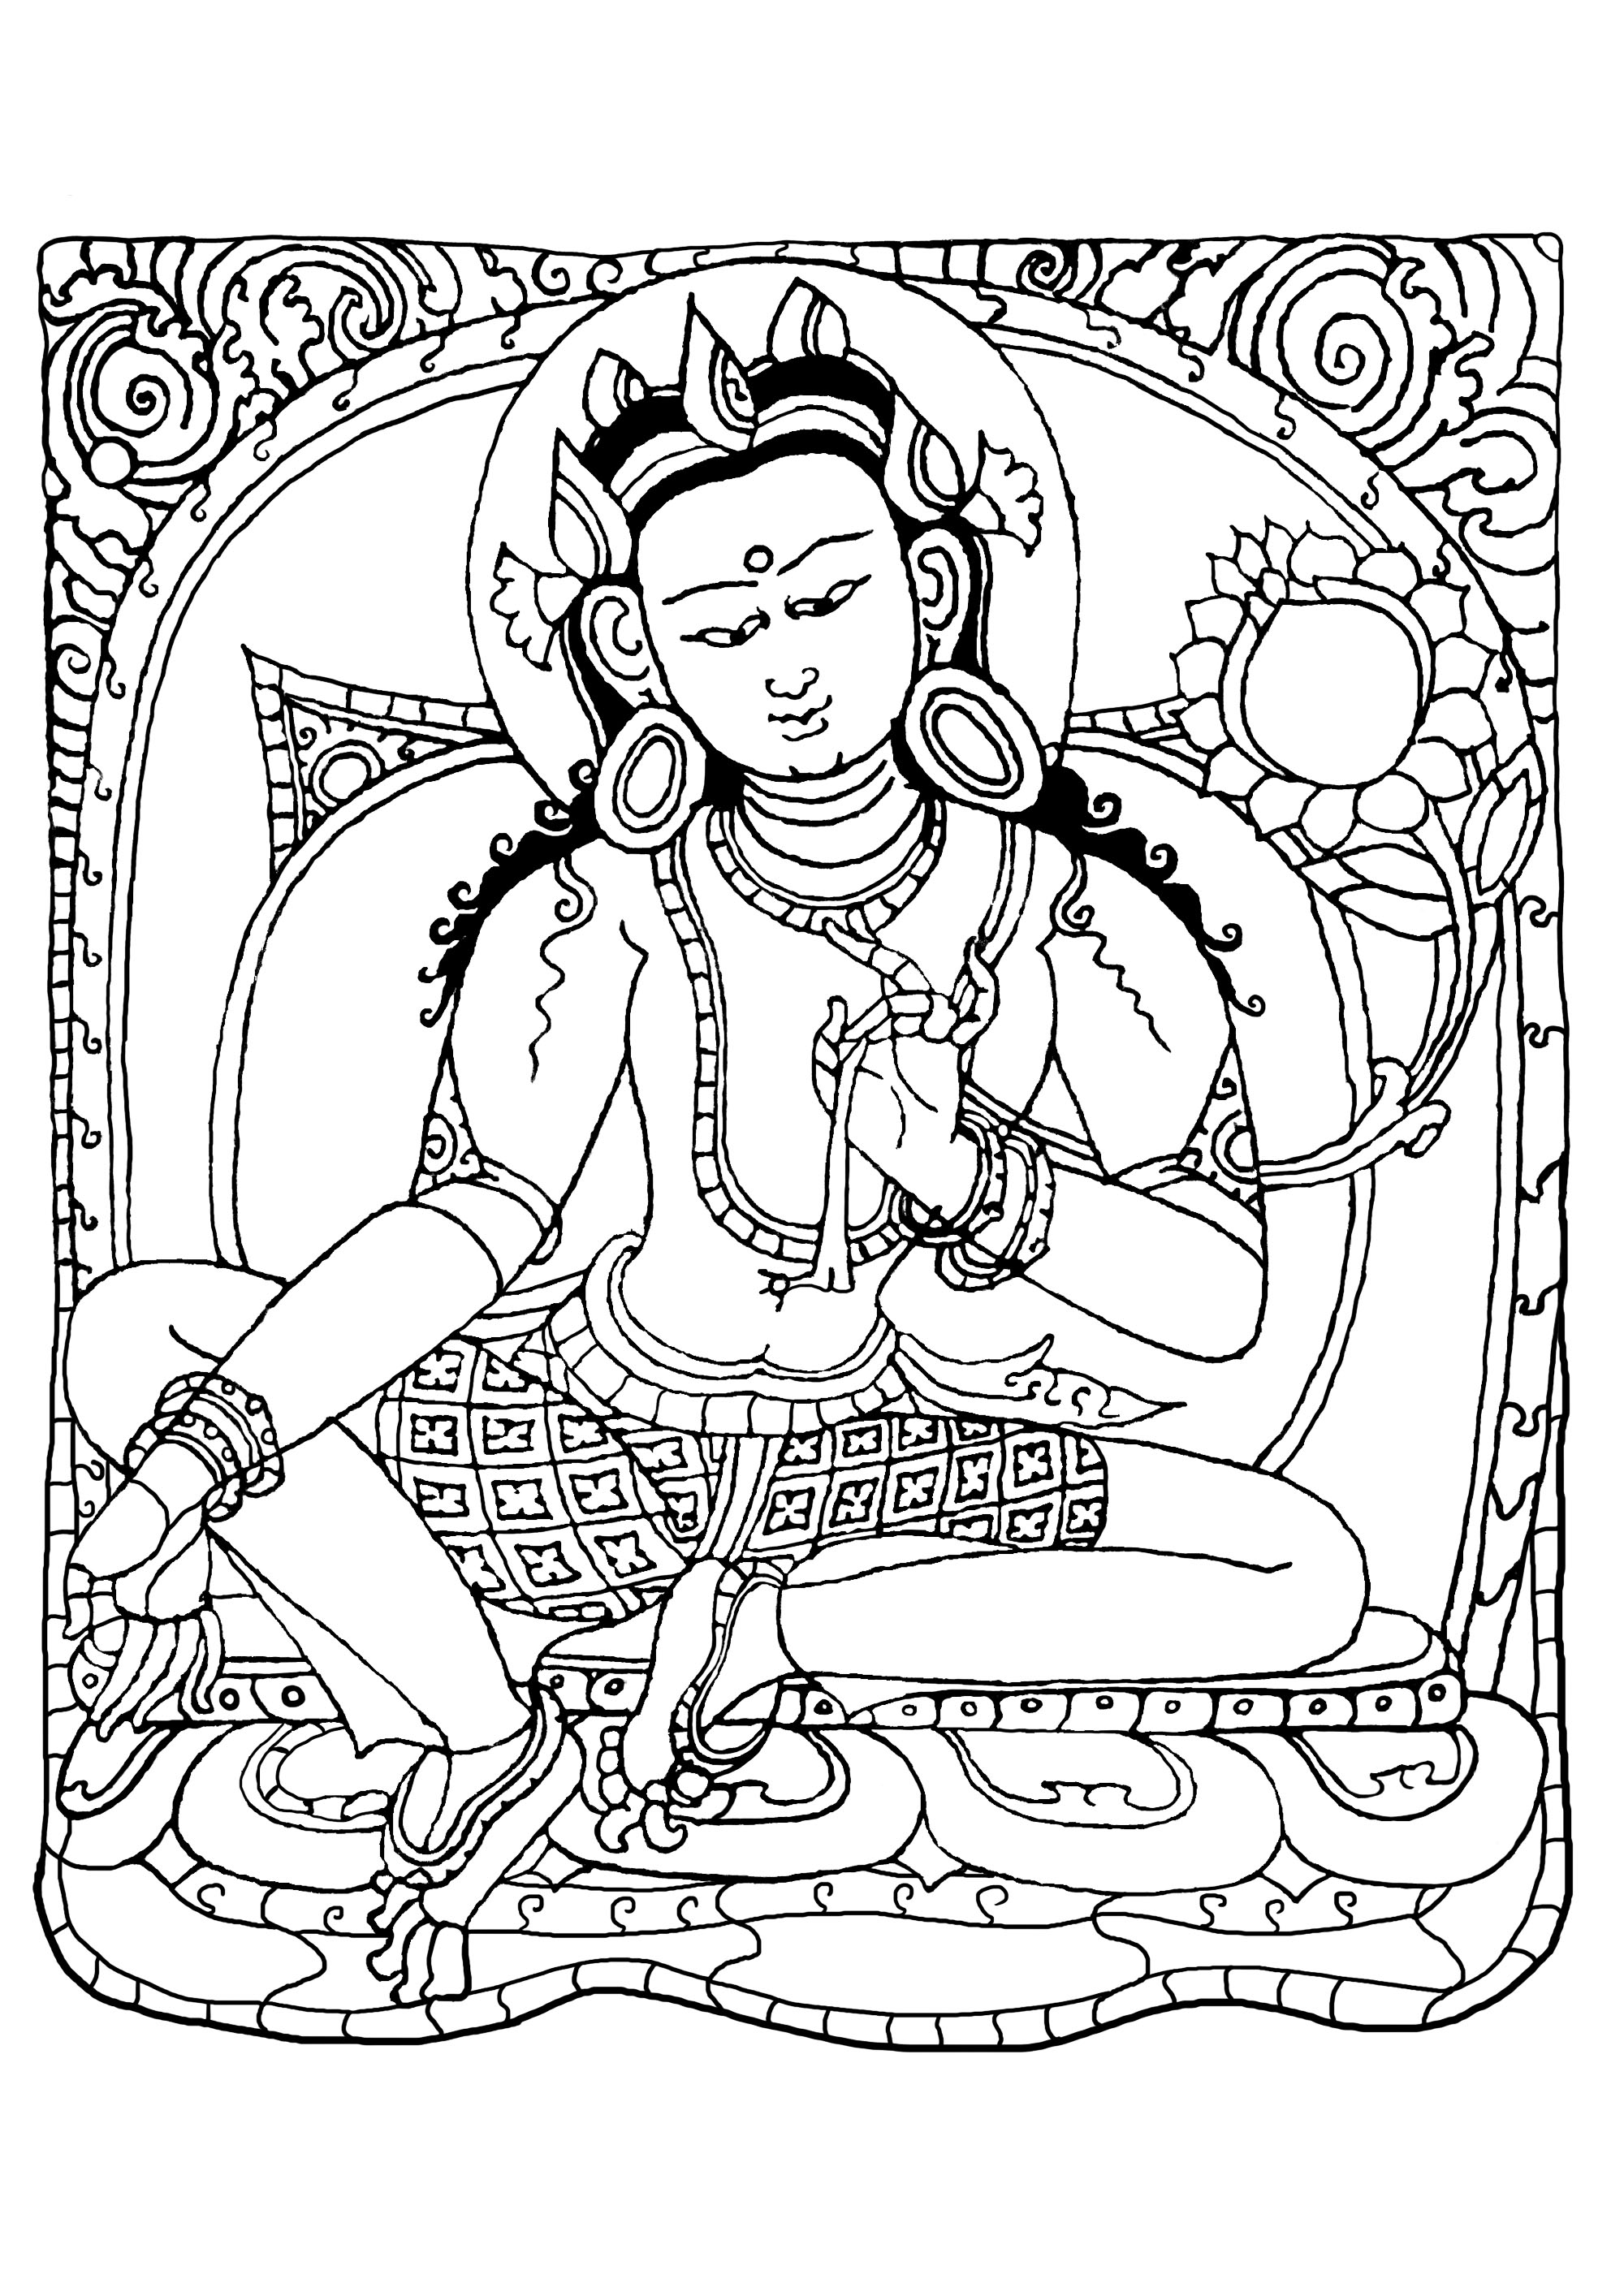 Página para colorir inspirada num desenho (cobre com dourado e tinta) representando Buda Shakyamuni. Foi fabricada por artesãos nepaleses, entre 1500 e 1600. Foi possivelmente fabricada e encomendada no Tibete.